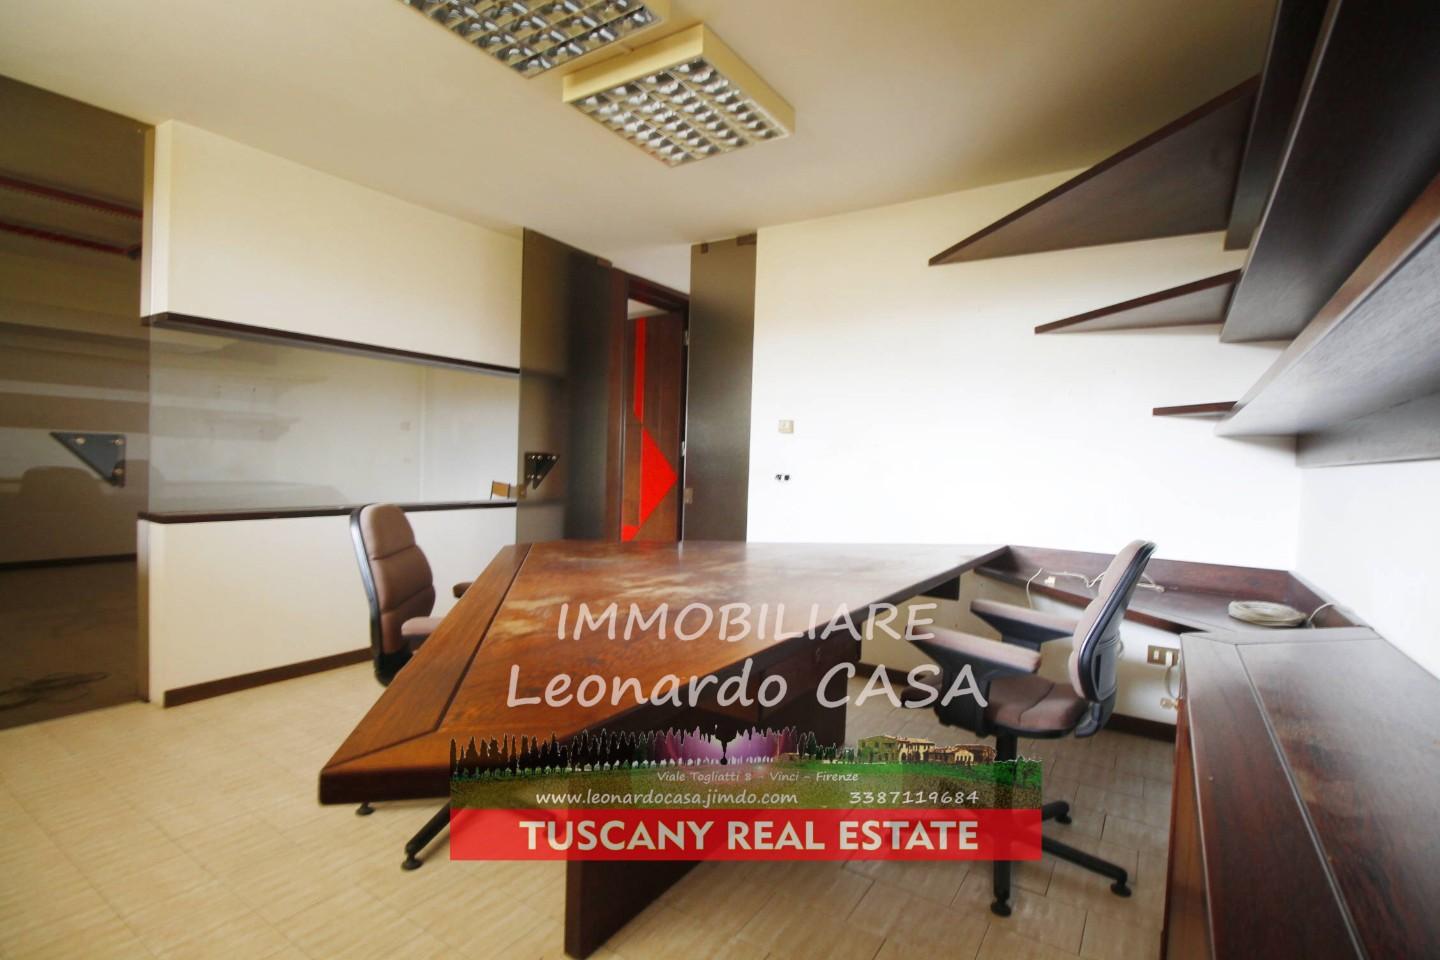 Ufficio / Studio in vendita a Vinci, 6 locali, prezzo € 280.000 | PortaleAgenzieImmobiliari.it